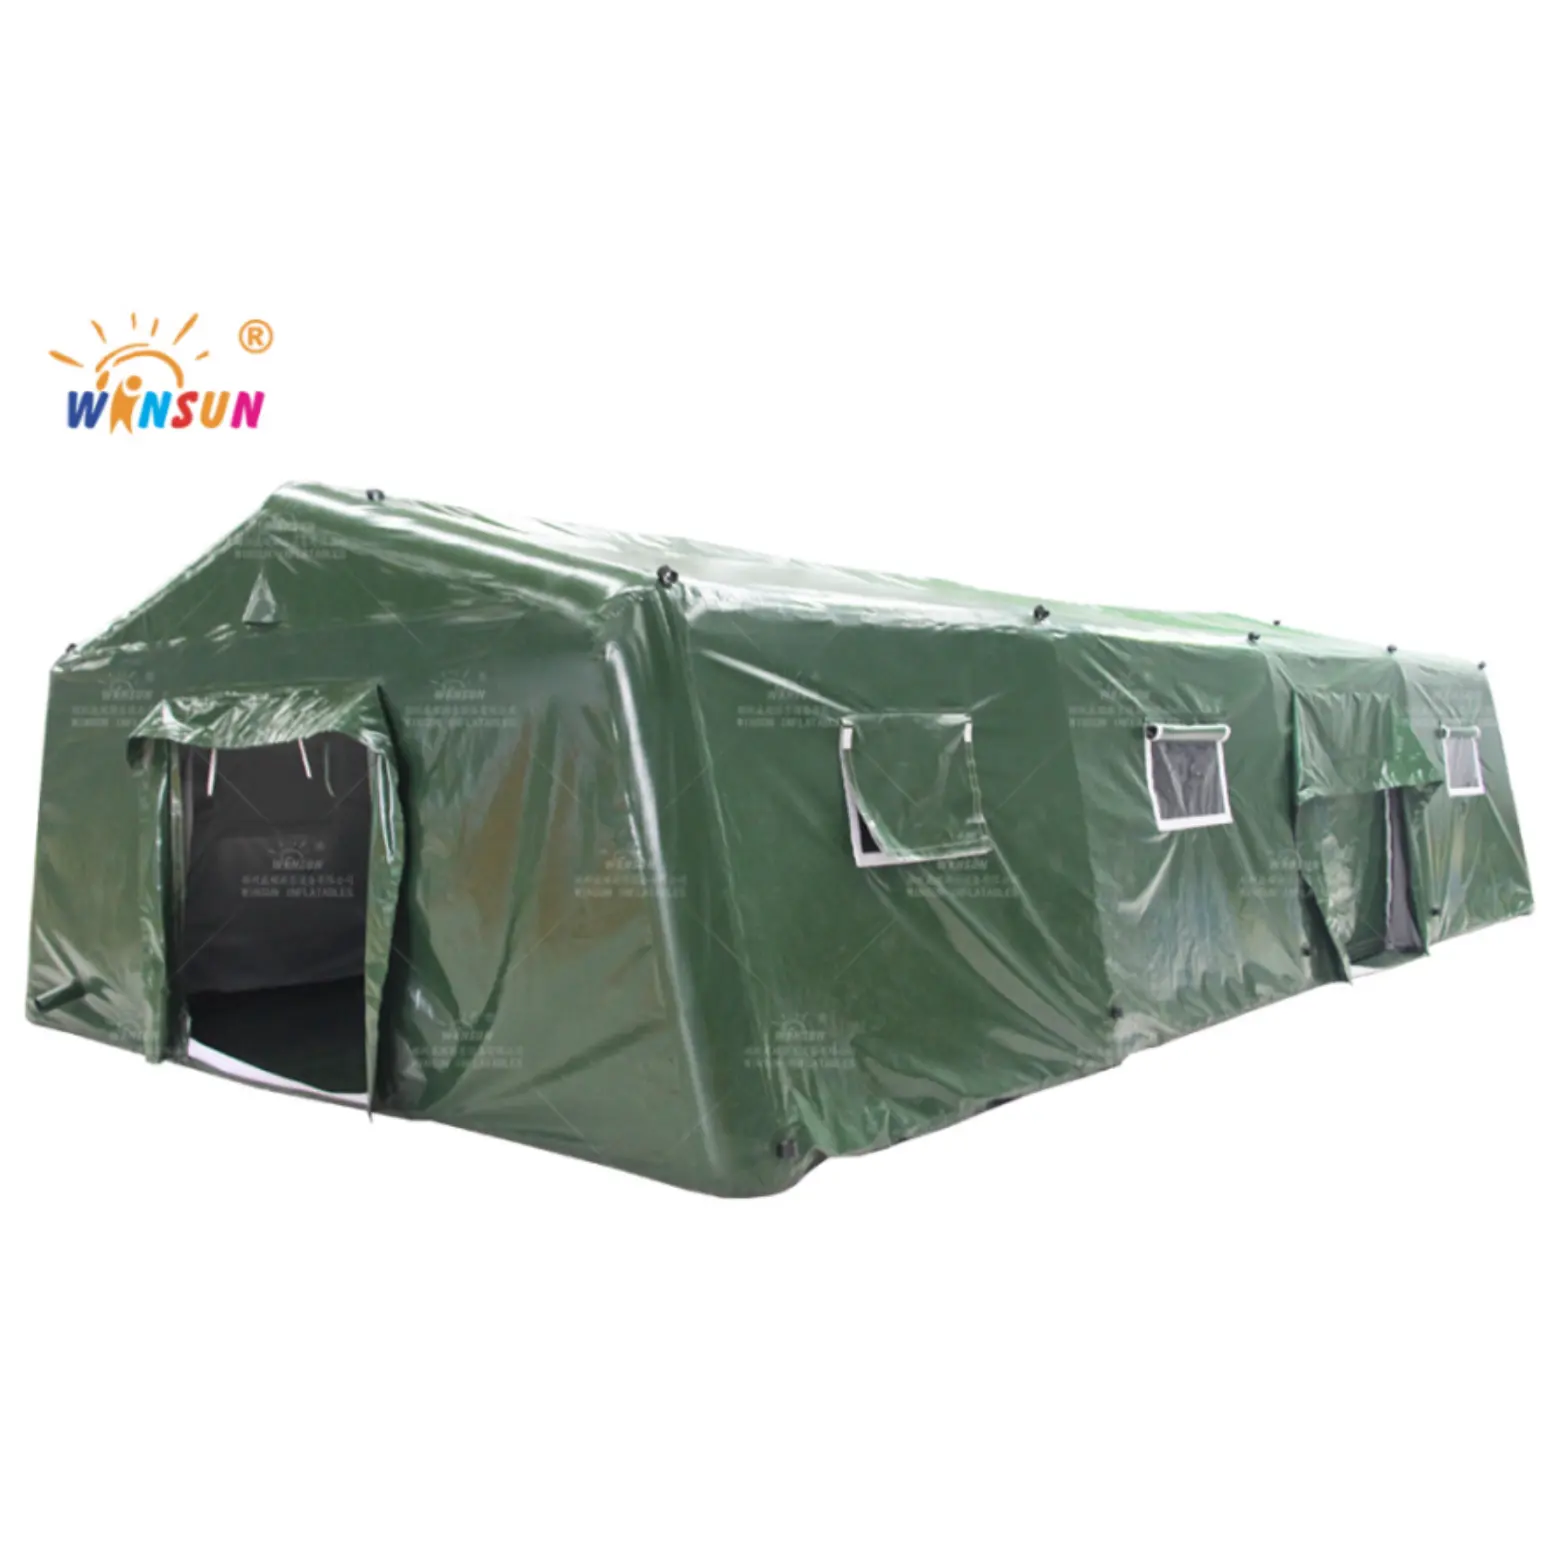 Winsun rừng màu xanh lá cây lớn Inflatable Lều bán buôn cứu trợ Lều Inflatable nhanh chóng triển khai nơi trú ẩn lều